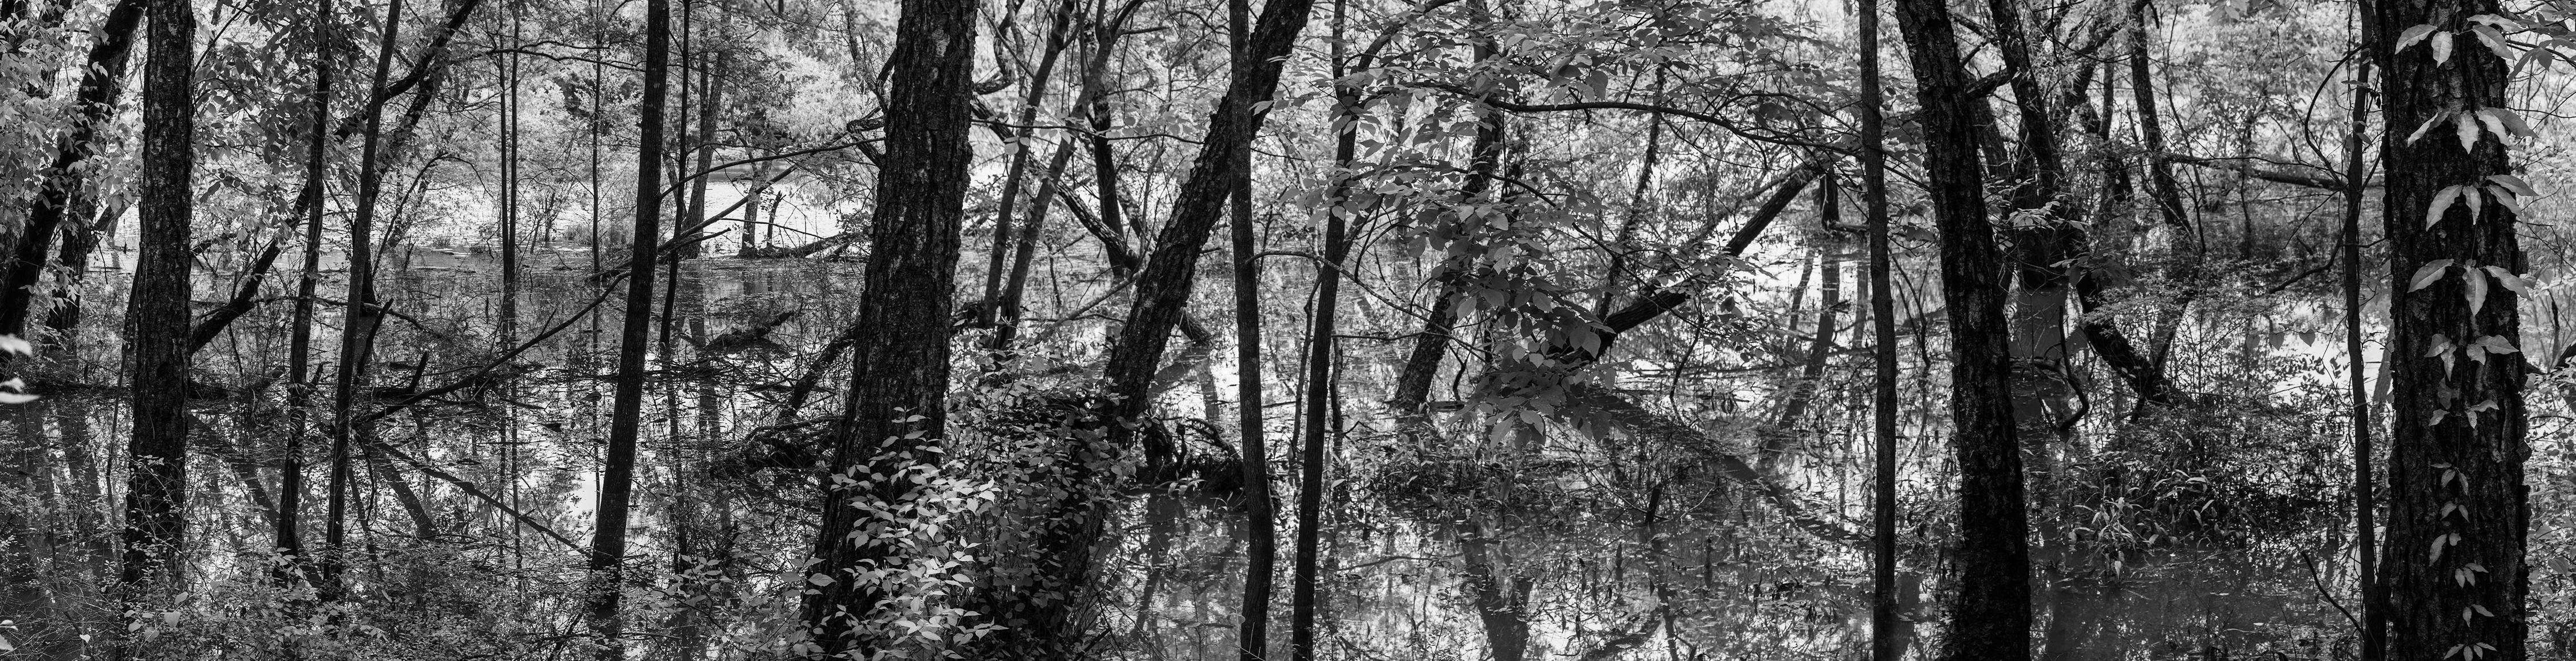 Richard Skoonberg Black and White Photograph – „Spring on the Chattahoochee“ Schwarz-Weiß-Landschaftsfotografie von Eliot Porter